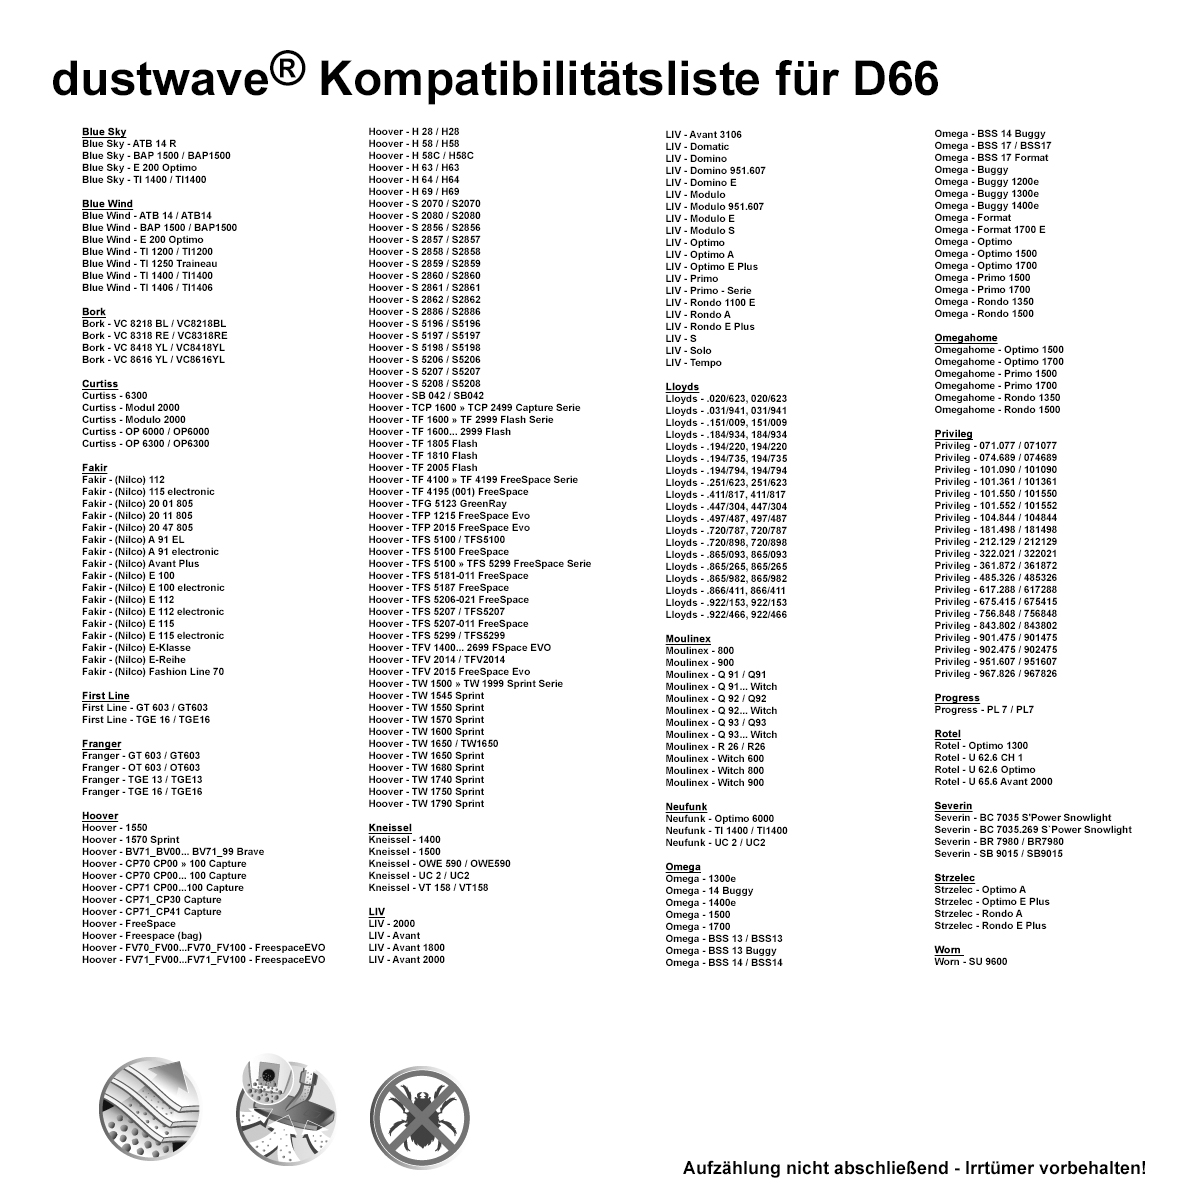 Dustwave® 10 Staubsaugerbeutel für Hoover TW1780 / TRTW1780 - hocheffizient, mehrlagiges Mikrovlies mit Hygieneverschluss - Made in Germany